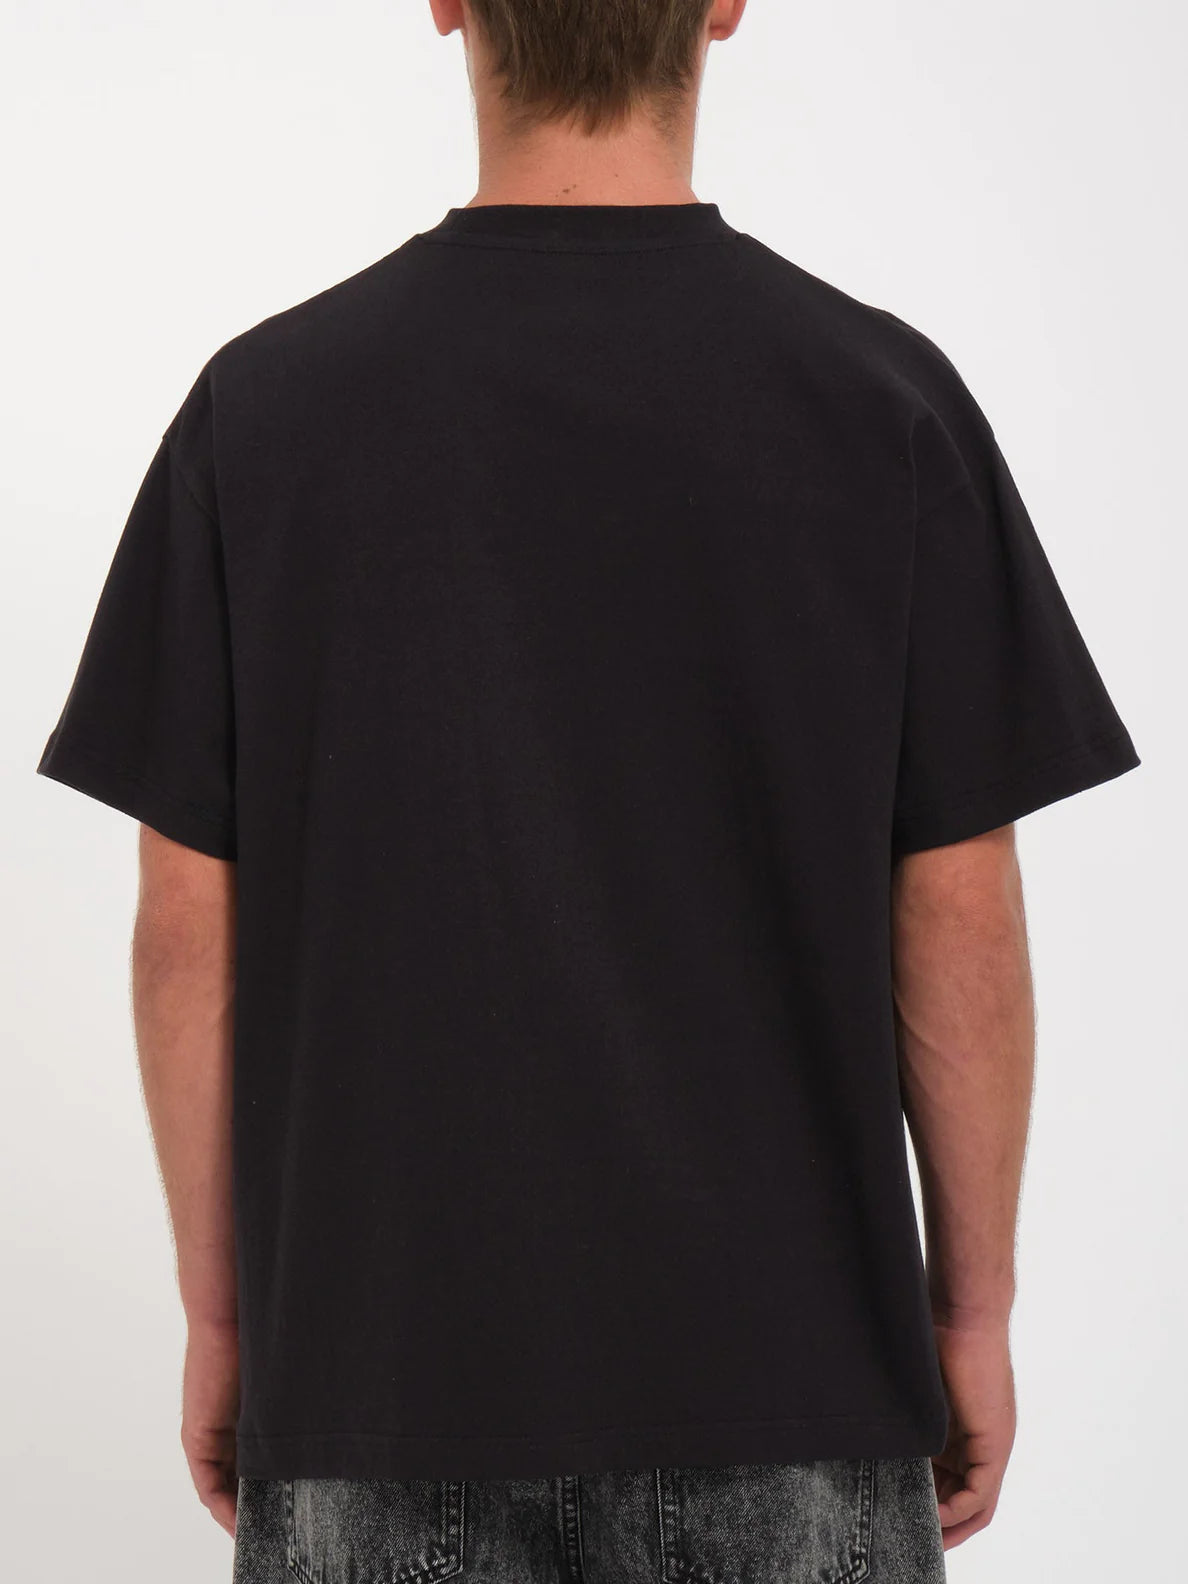 Camiseta Volcom Last Shot - Black | Camisetas de hombre | Camisetas manga corta de hombre | Volcom Shop | surfdevils.com